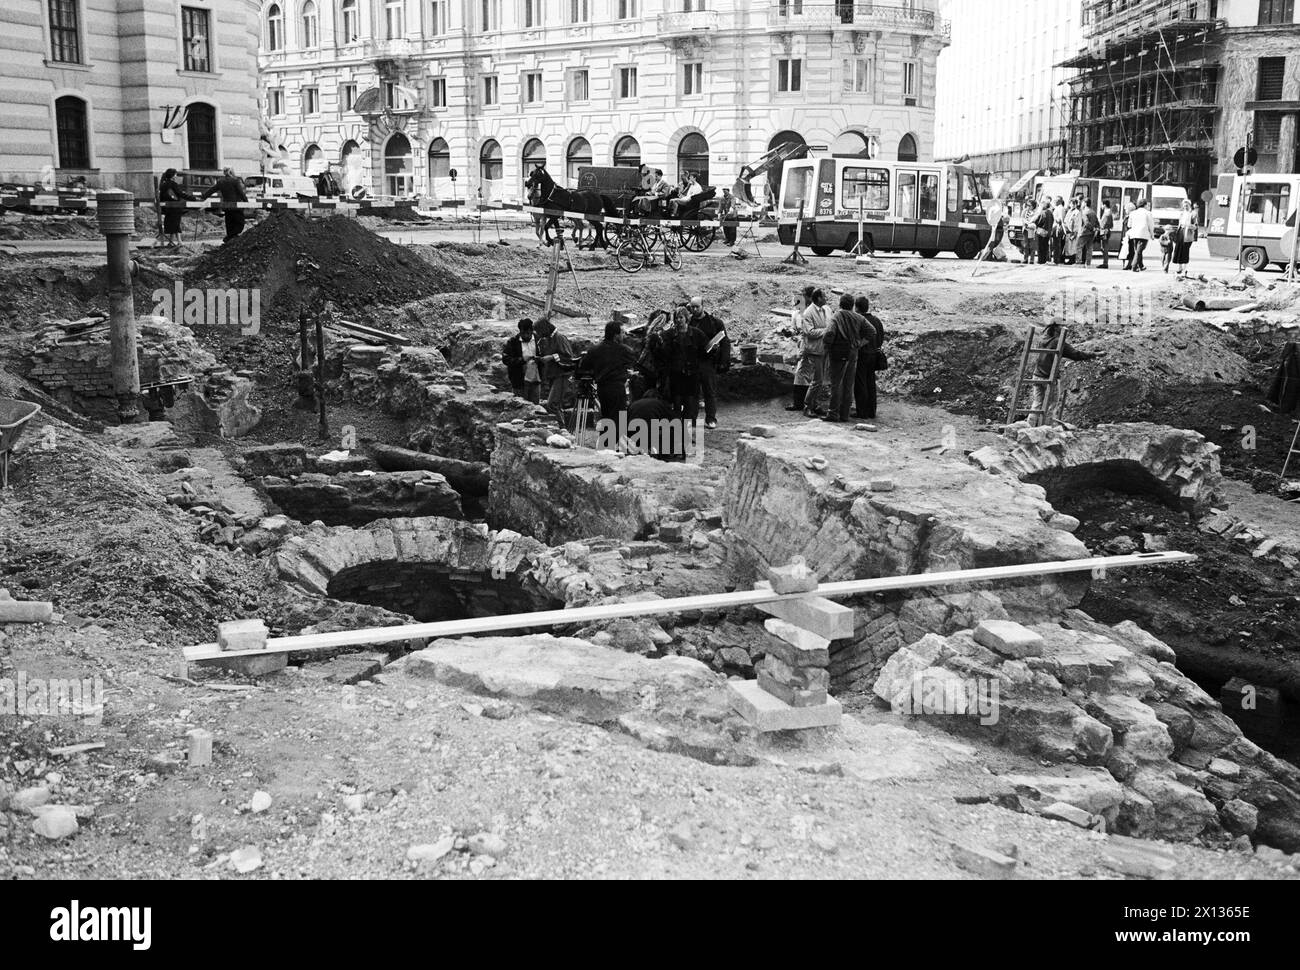 Vienne le 12 juin 1990 : pendant les travaux de construction de la Michaelerplatz de Vienne, des creuseurs ont fouillé les fondements de l'ancien théâtre latin. - 19900612 PD0009 - Rechteinfo : droits gérés (RM) Banque D'Images